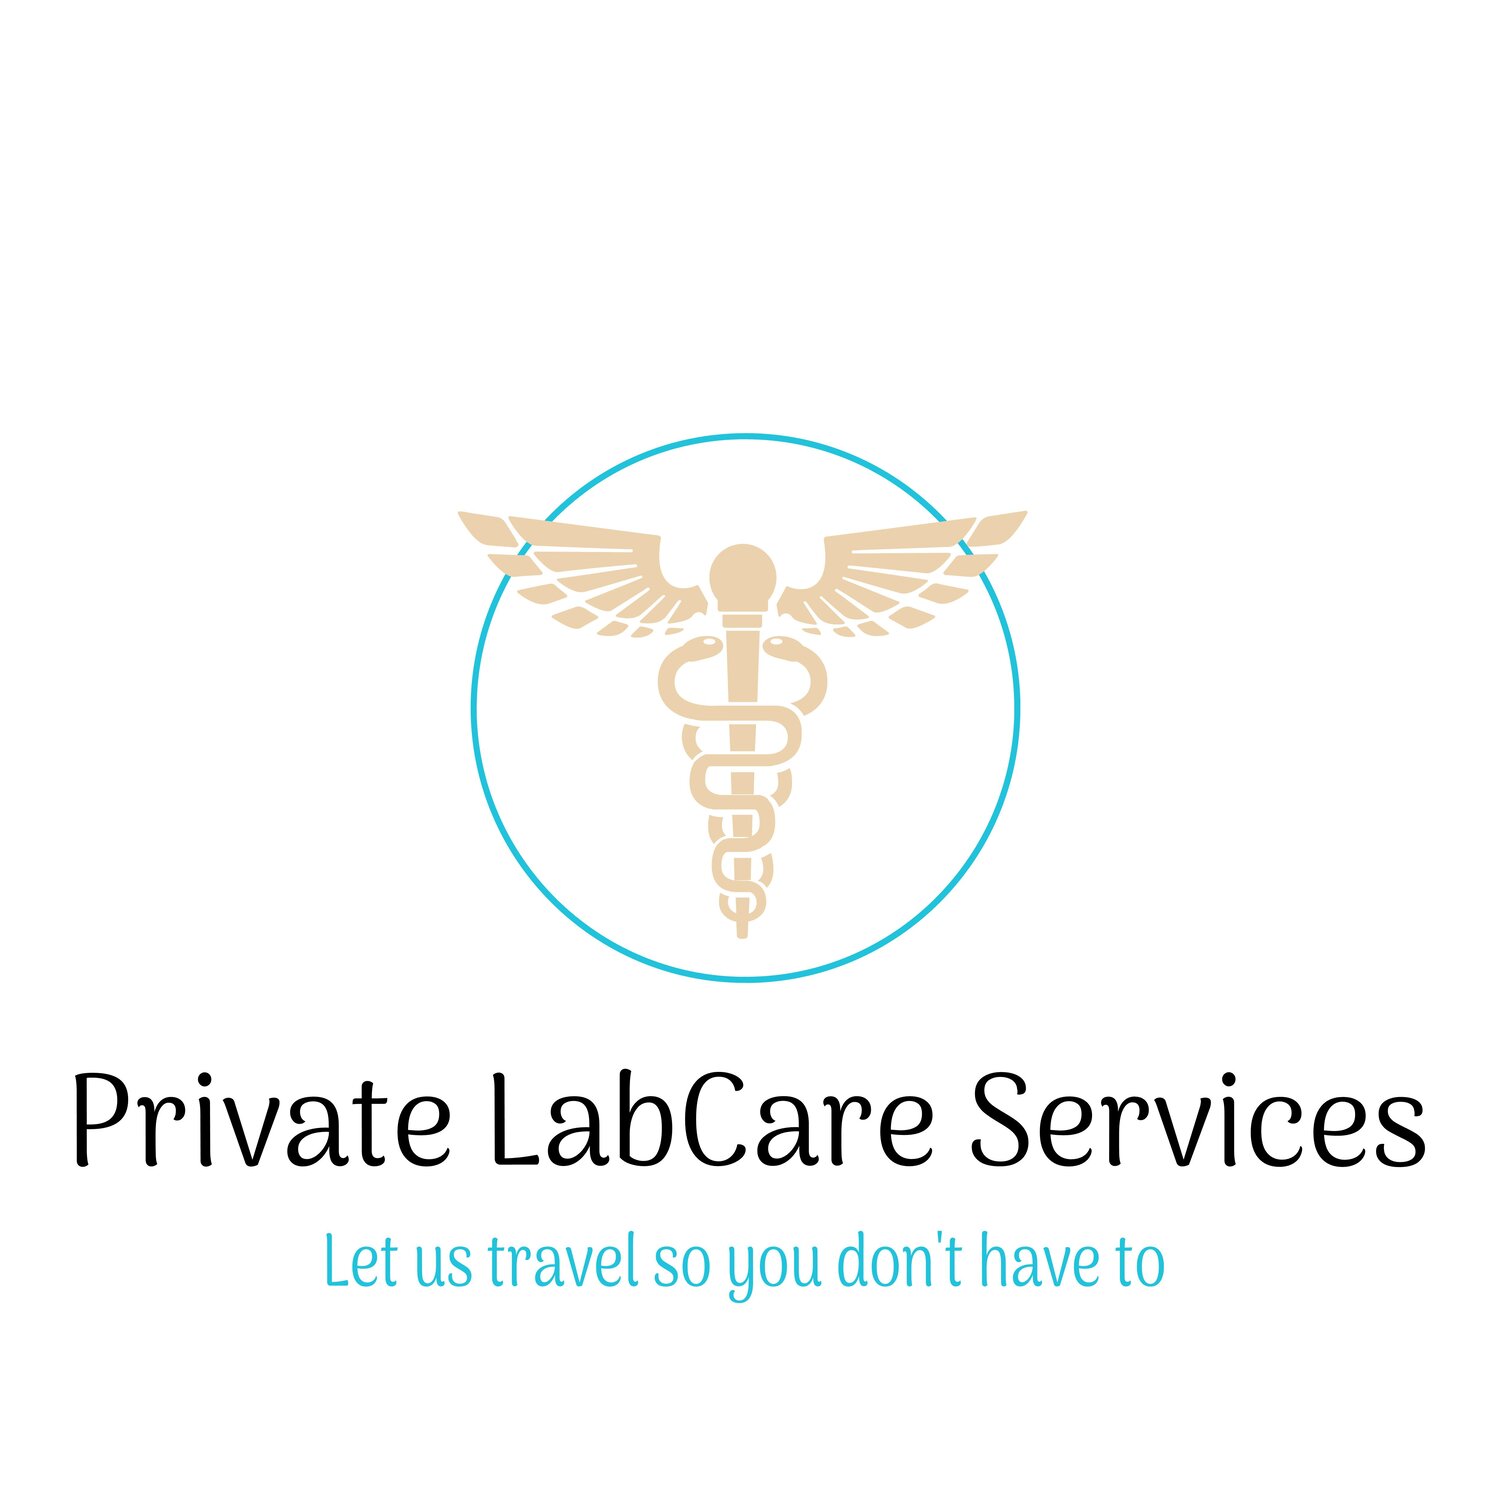 Private LabCare Services